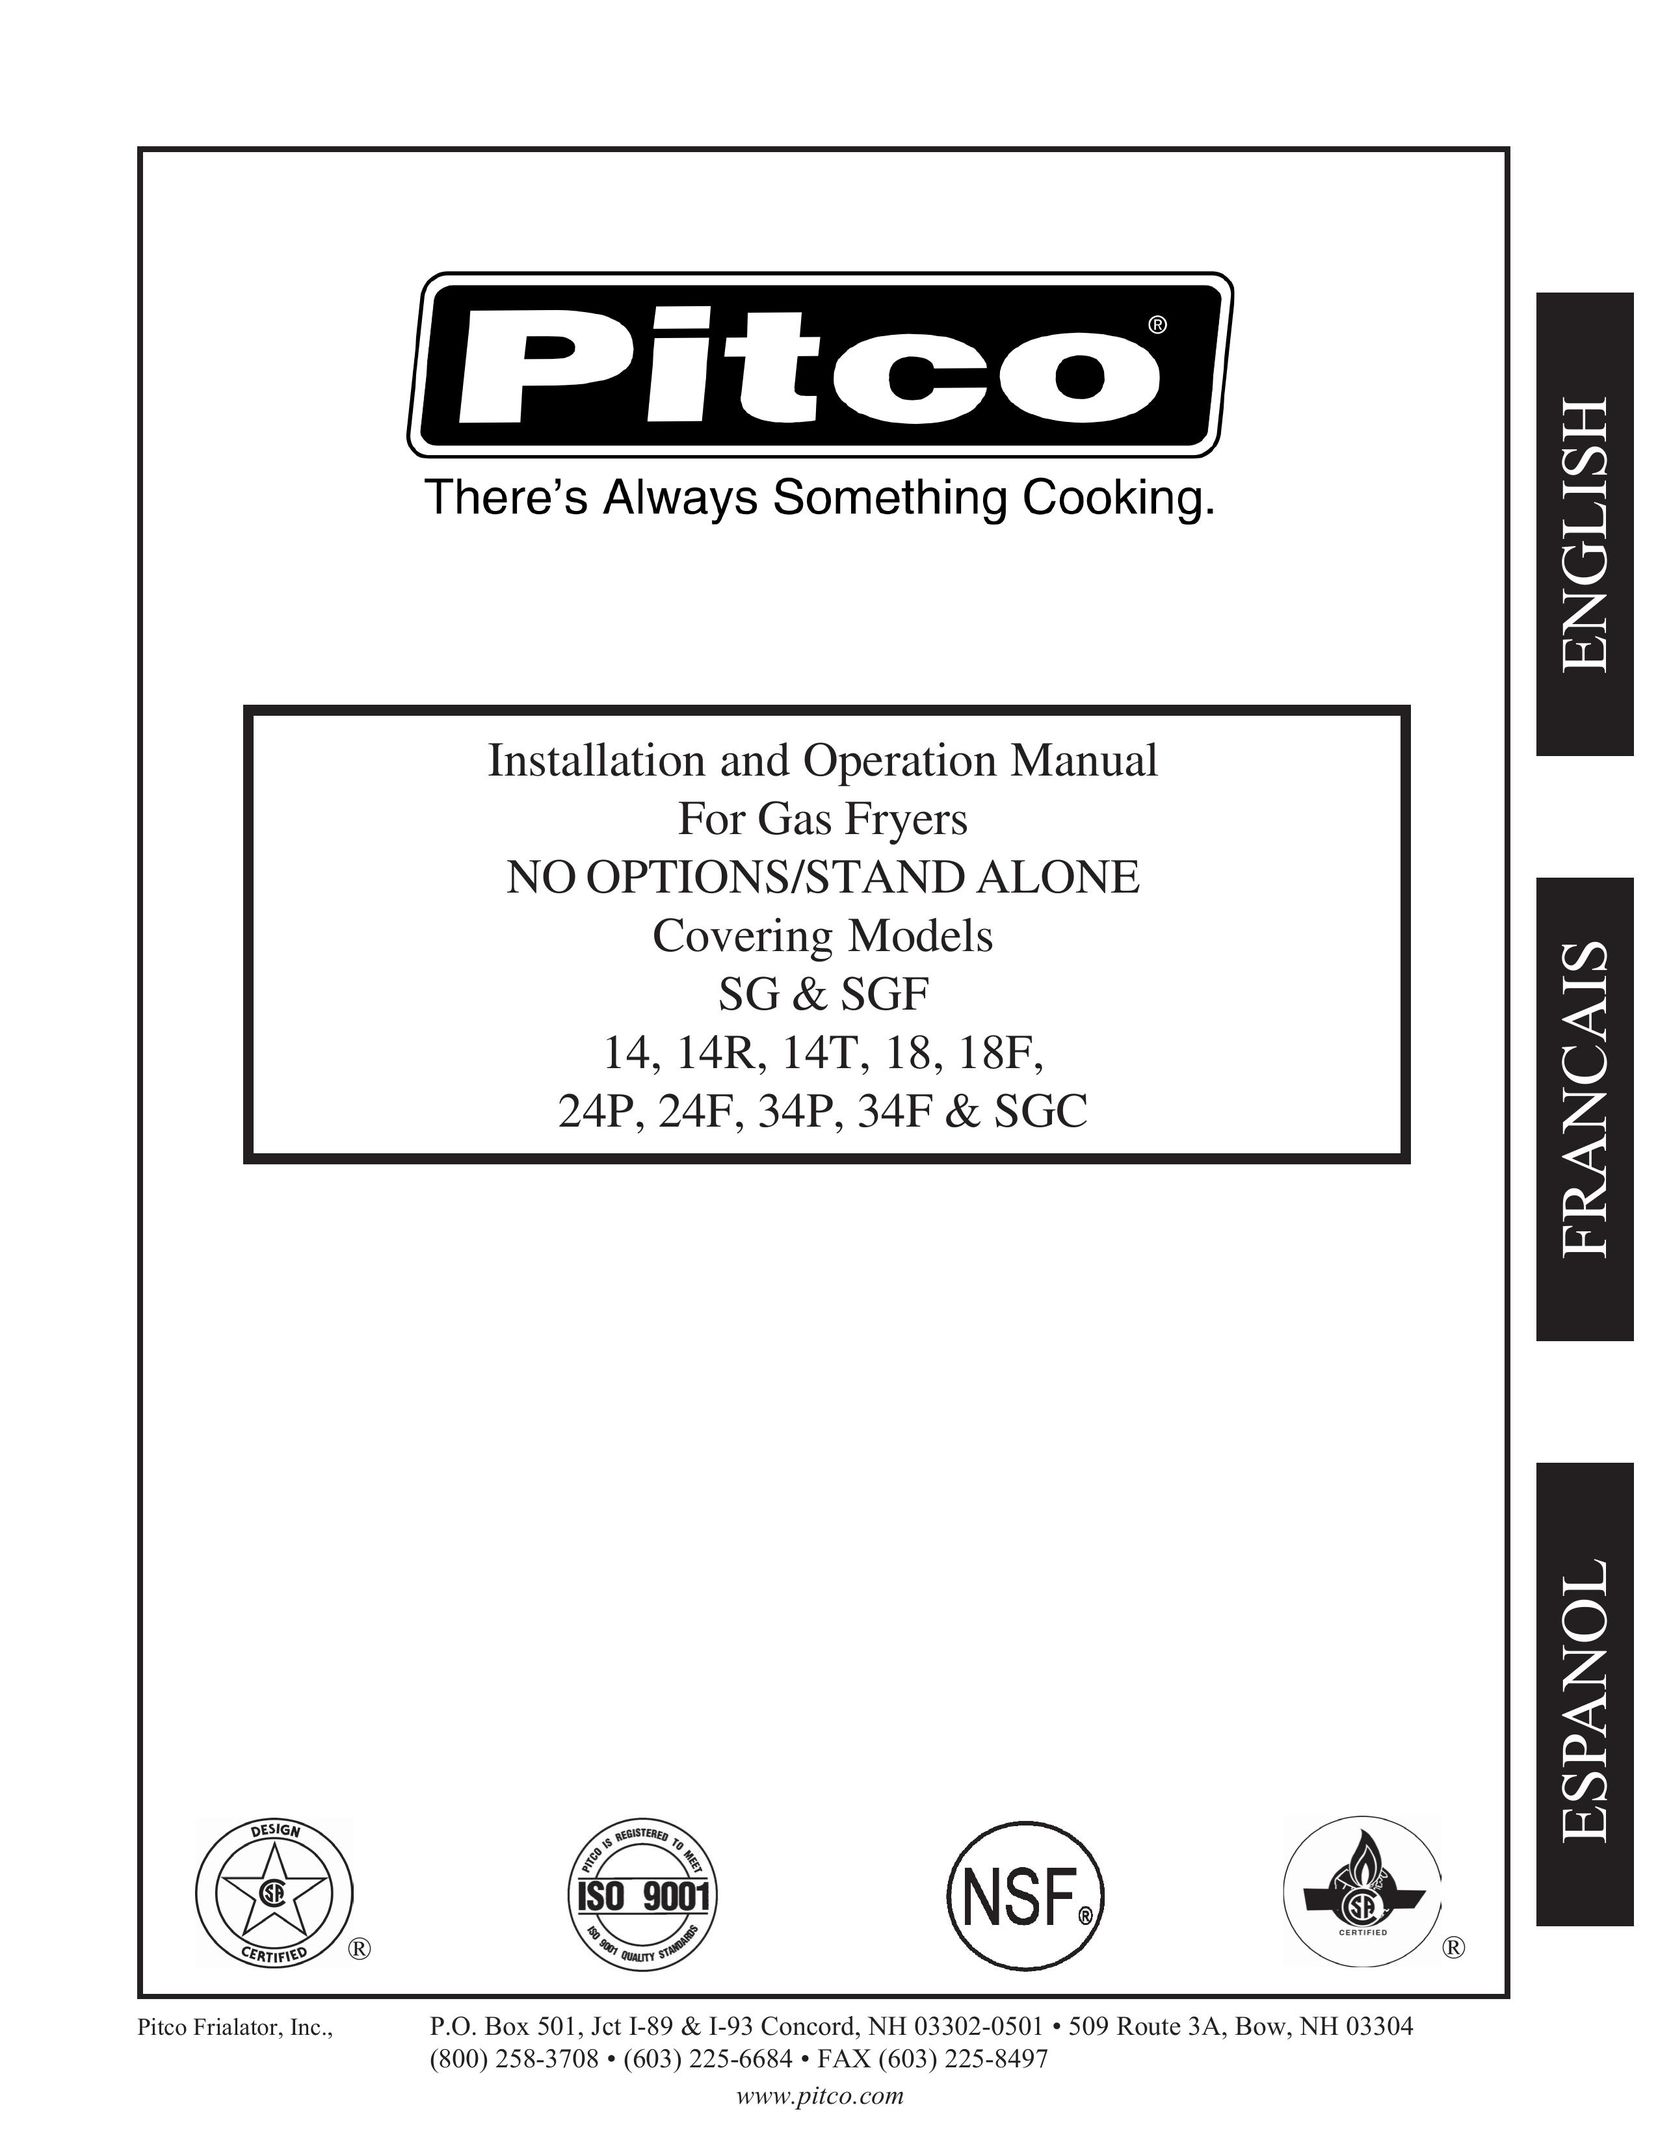 Pitco Frialator 14T Fryer User Manual